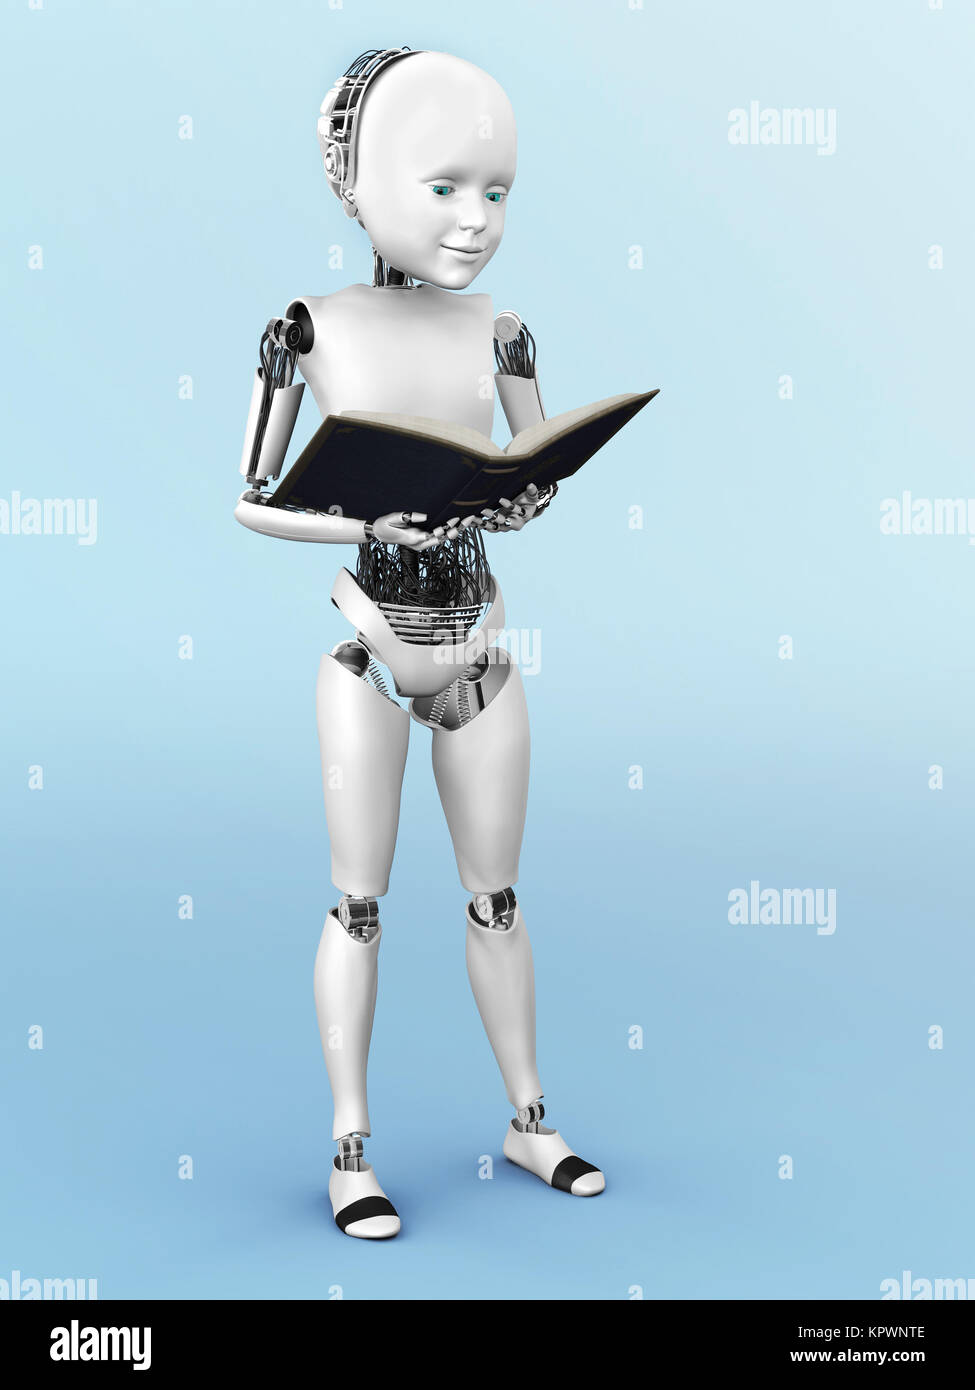 3D-Rendering eines Roboters Kind ein Buch lesen. Stockfoto